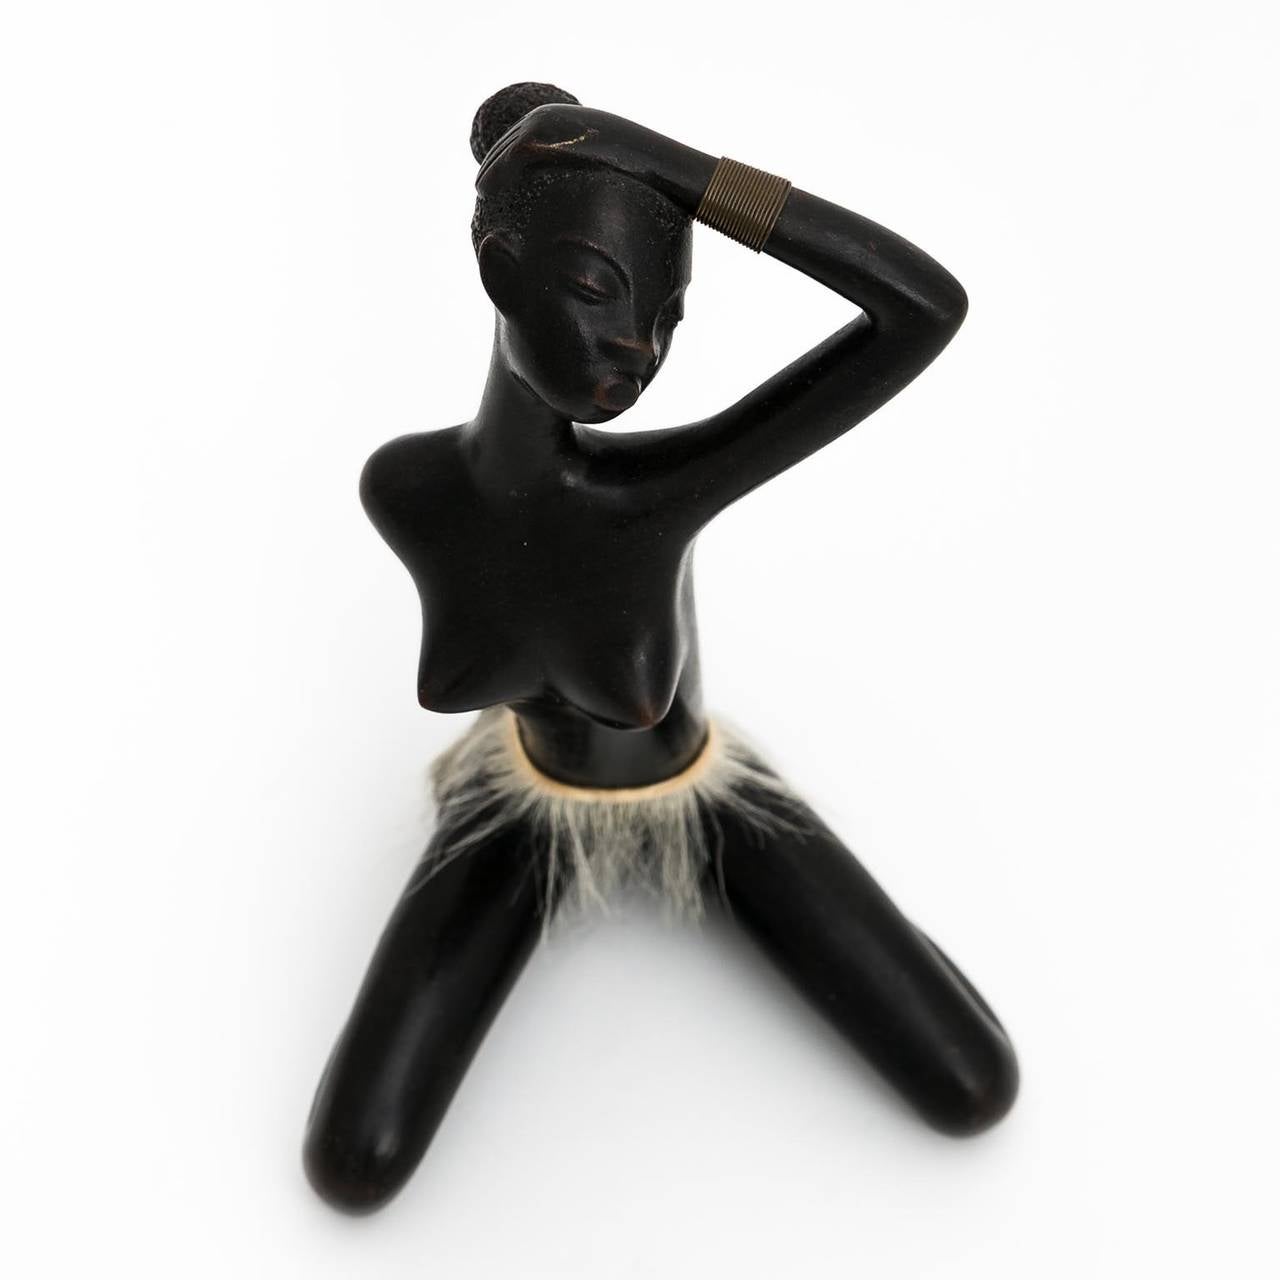 Mid-Century Modern African Woman Figurine Sculpture by Leopold Anzengruber, Austria, Vienna, 1950s